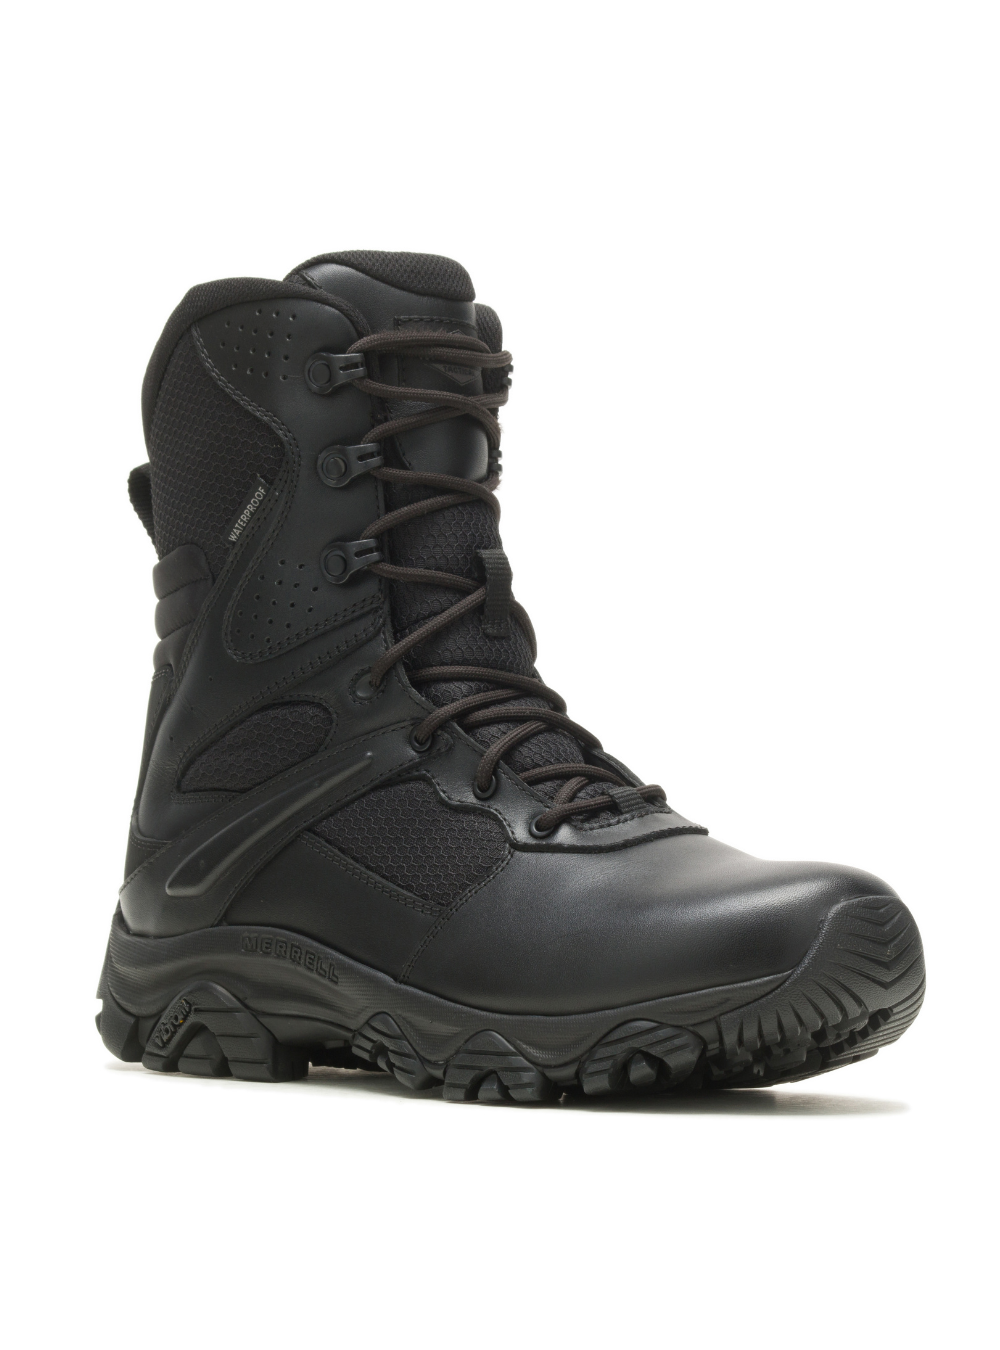 Merrell Men's Moab 3 8" Tactical Response Zip Waterproof Boot - Black